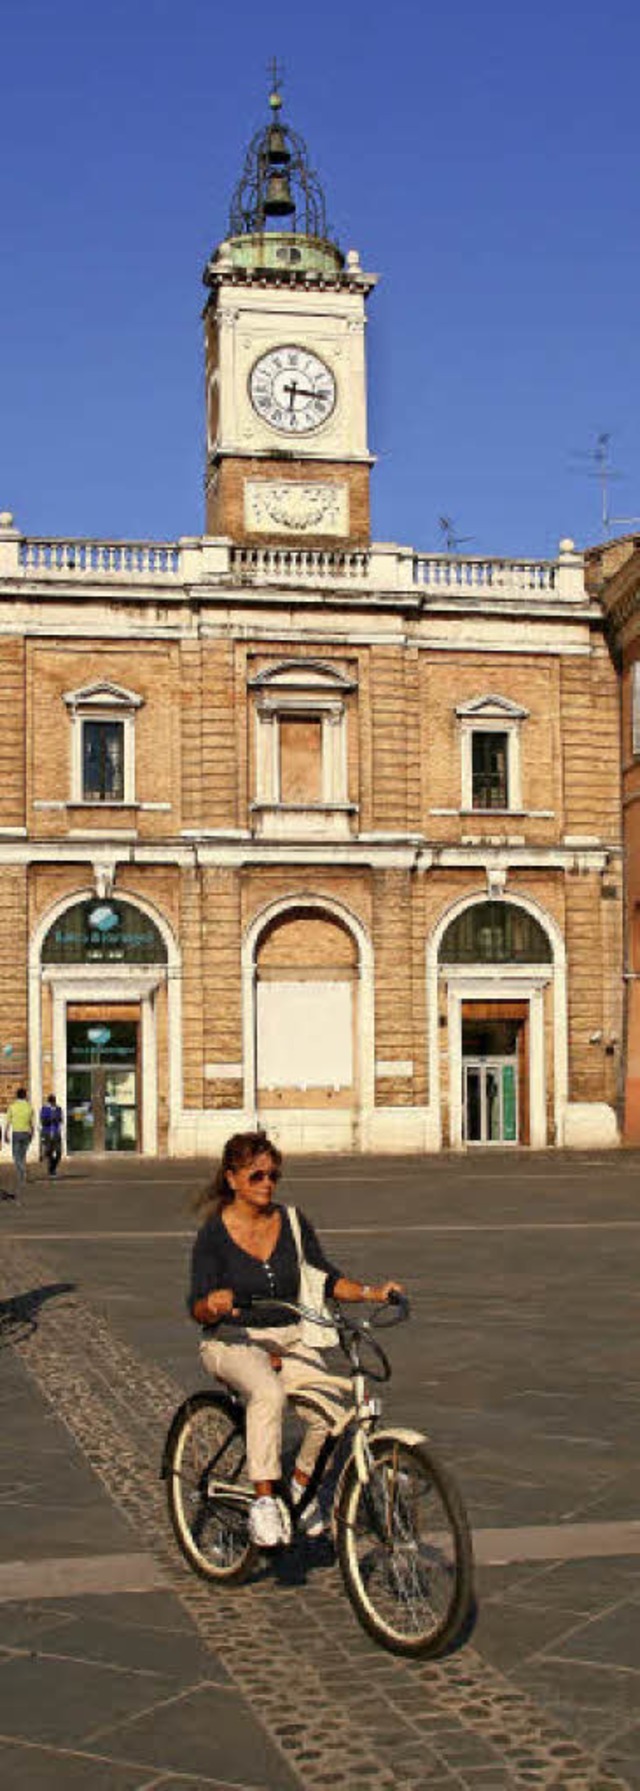 Aufgehbscht: die Piazza Popolo in Ravenna   | Foto: Brnjes